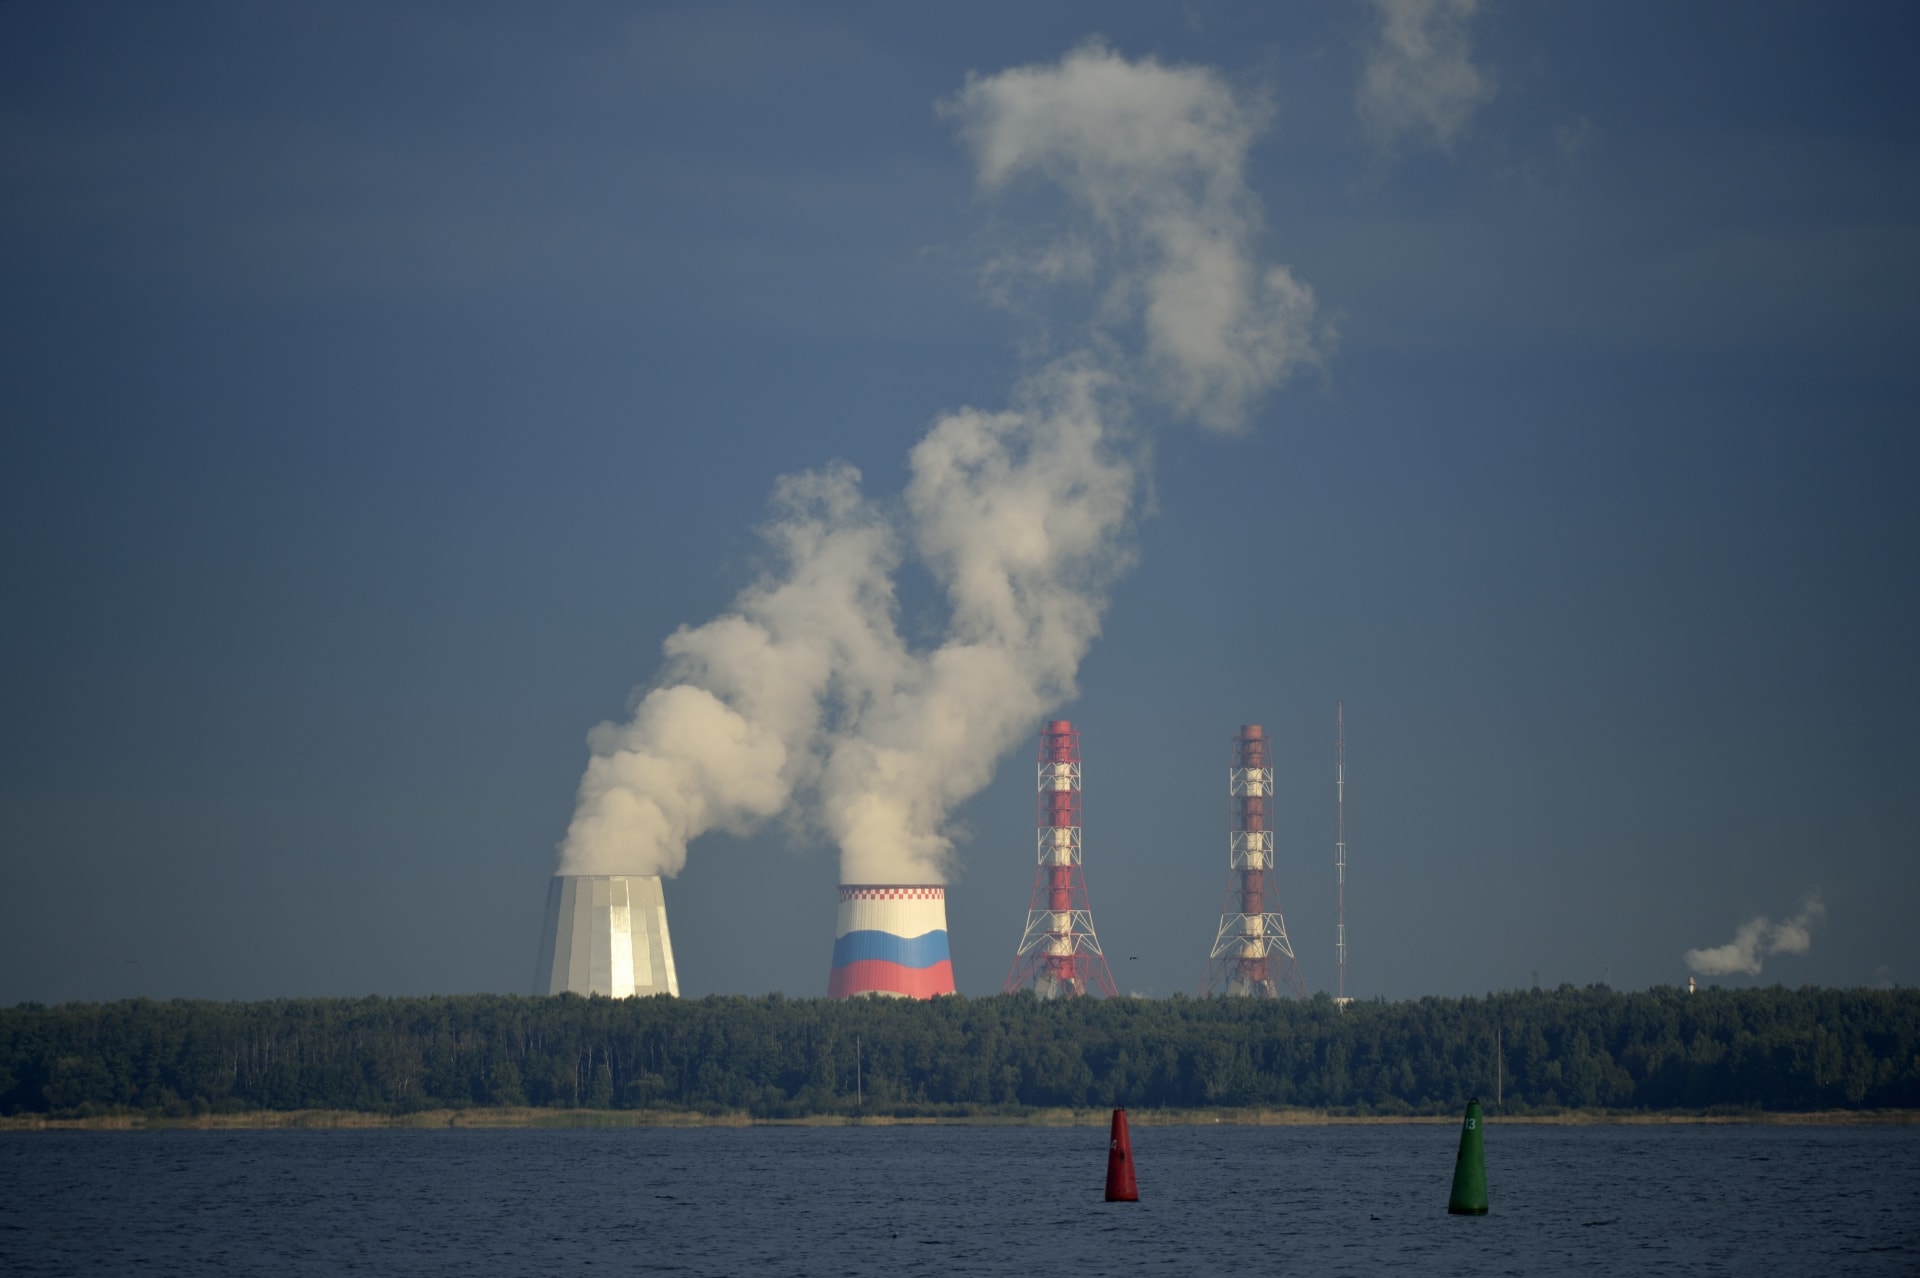 روسيا تنفي أي تسريب من مفاعلاتها النووية بعد رصد "إشعاع أعلى من المعتاد" في أوروبا